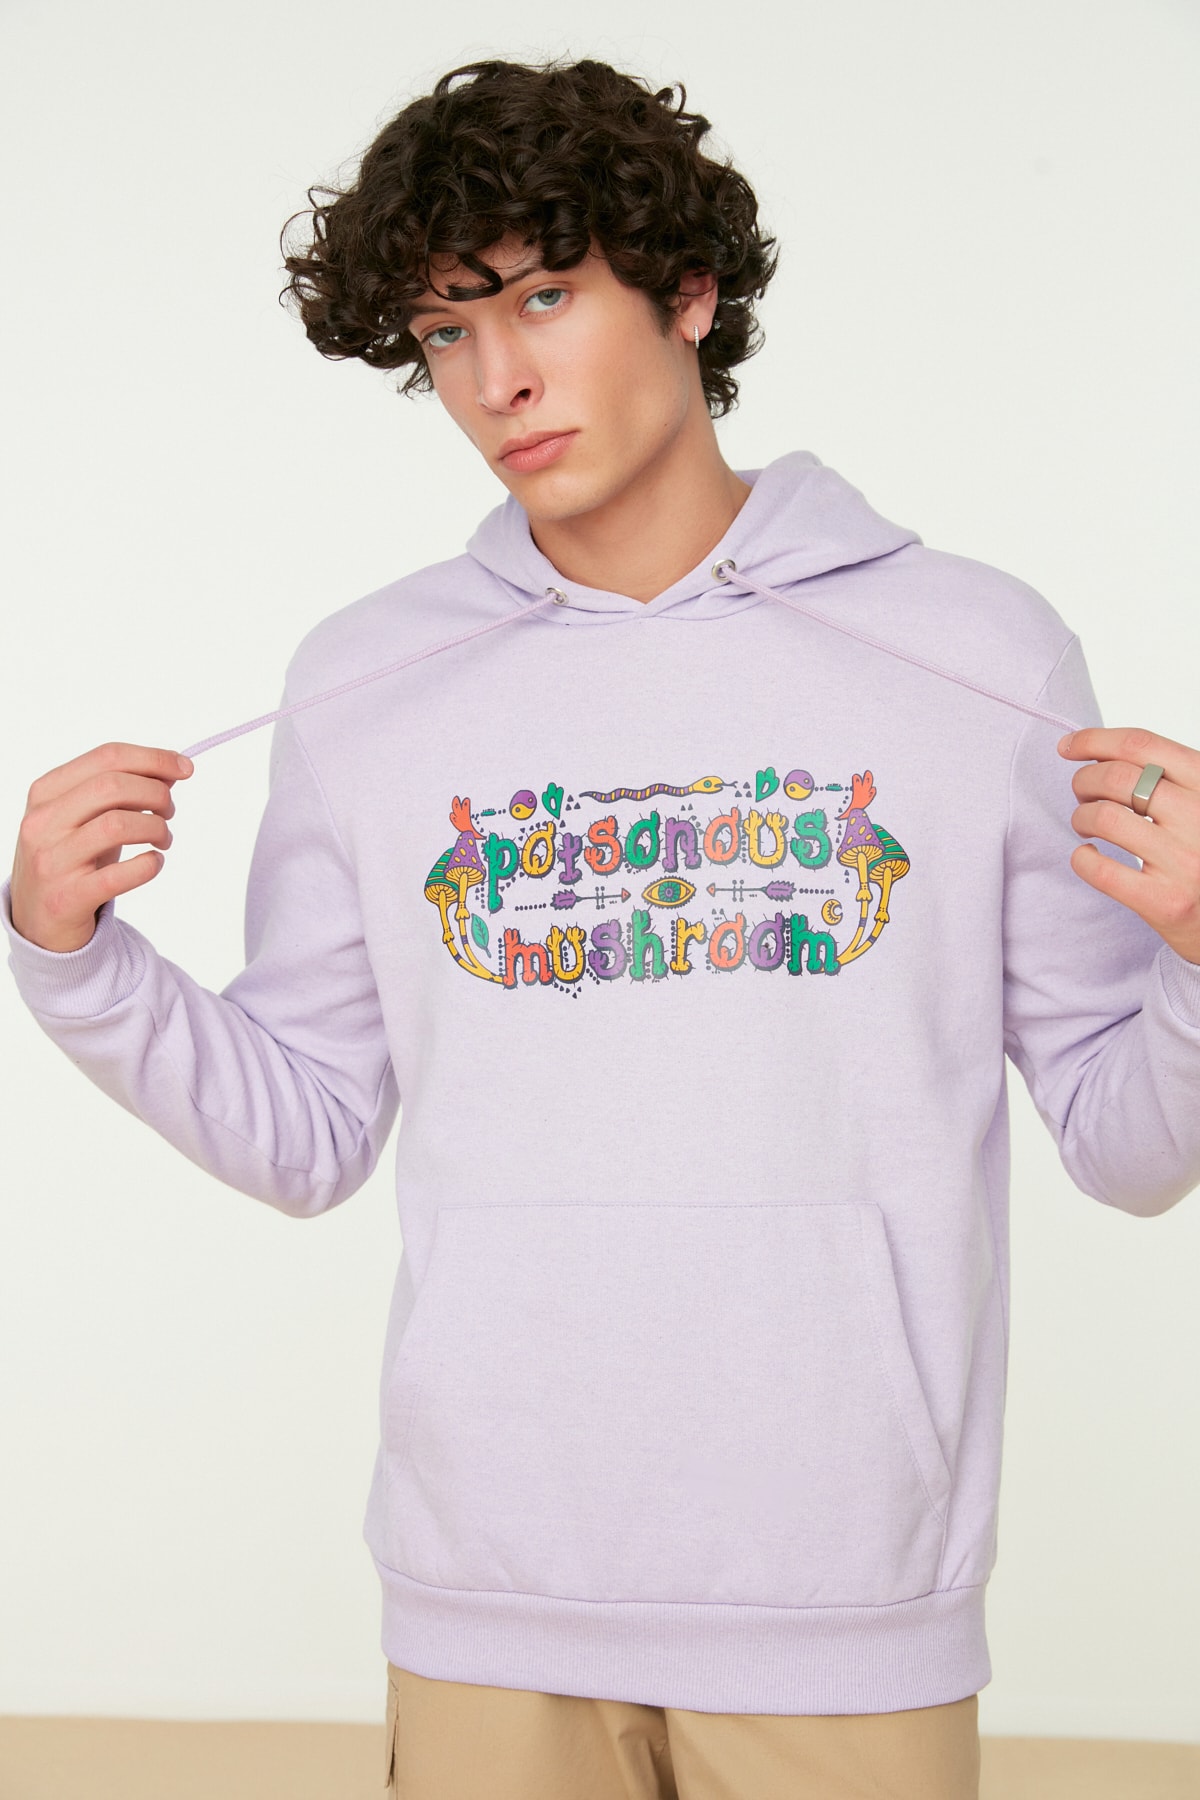 Trendyol Lilac Men's Regular/Normal Fit Hooded Text Printed Sweatshirt